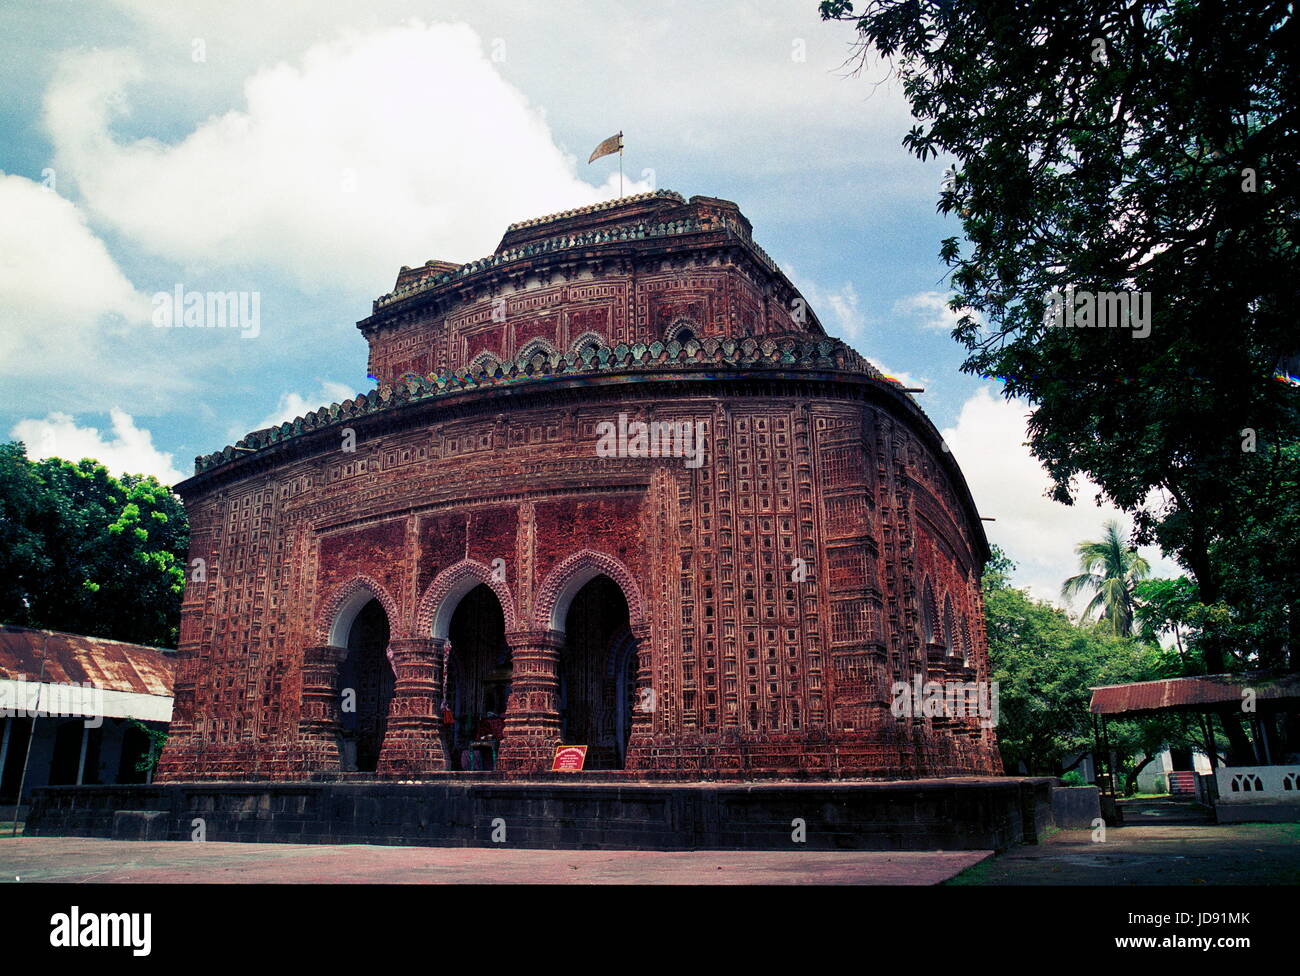 Façade d'kantajio temple construit en 1752 dans le nord du côté de dinaj pur l'un des plus décorés temple de bangladesh mady par brique et terre cuite Banque D'Images